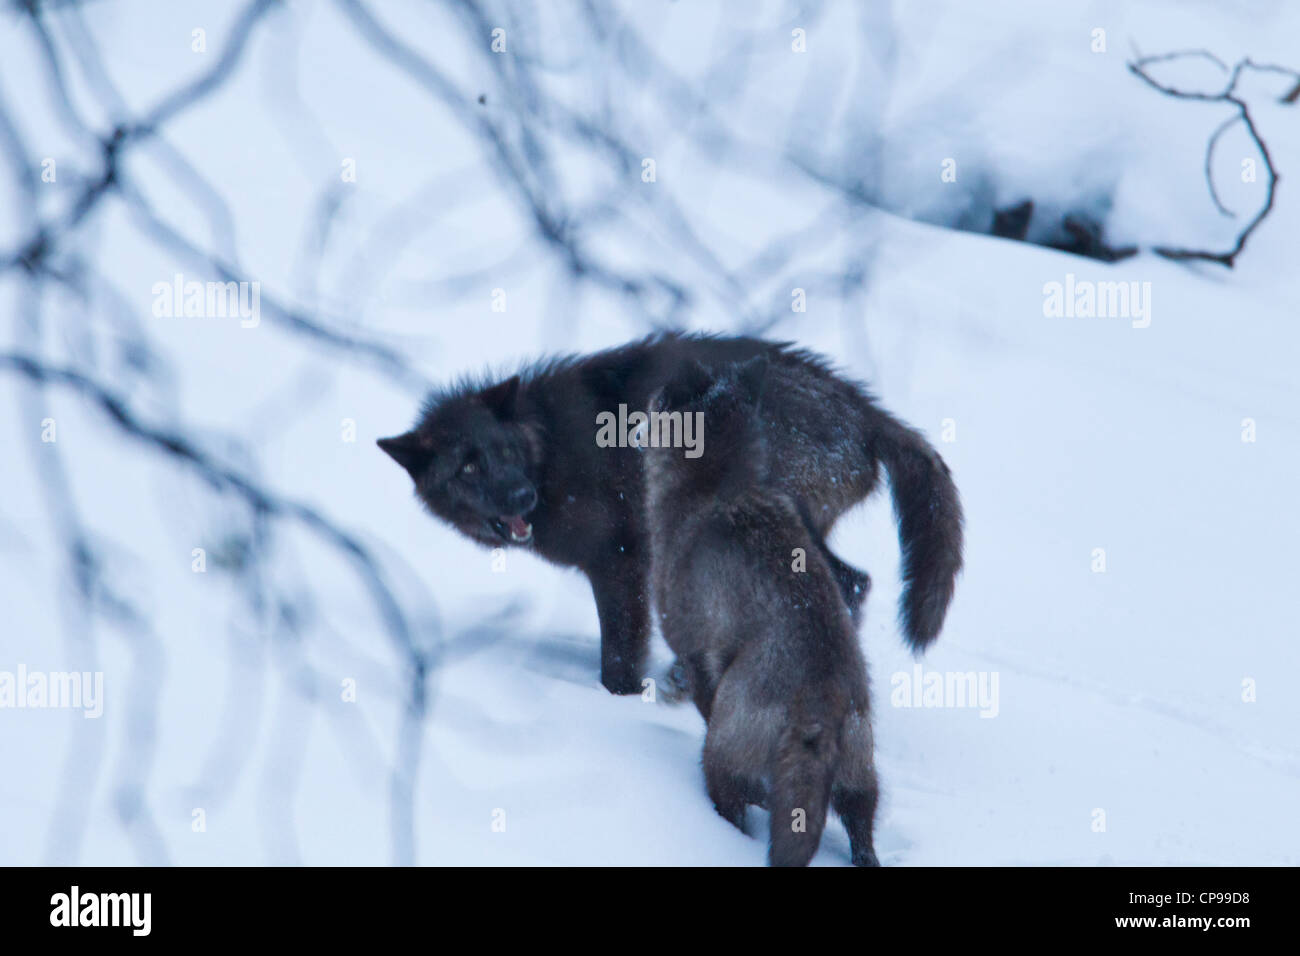 Deux loups gris jouer dans la neige, dans le parc national Banff, Alberta, Canada. Banque D'Images